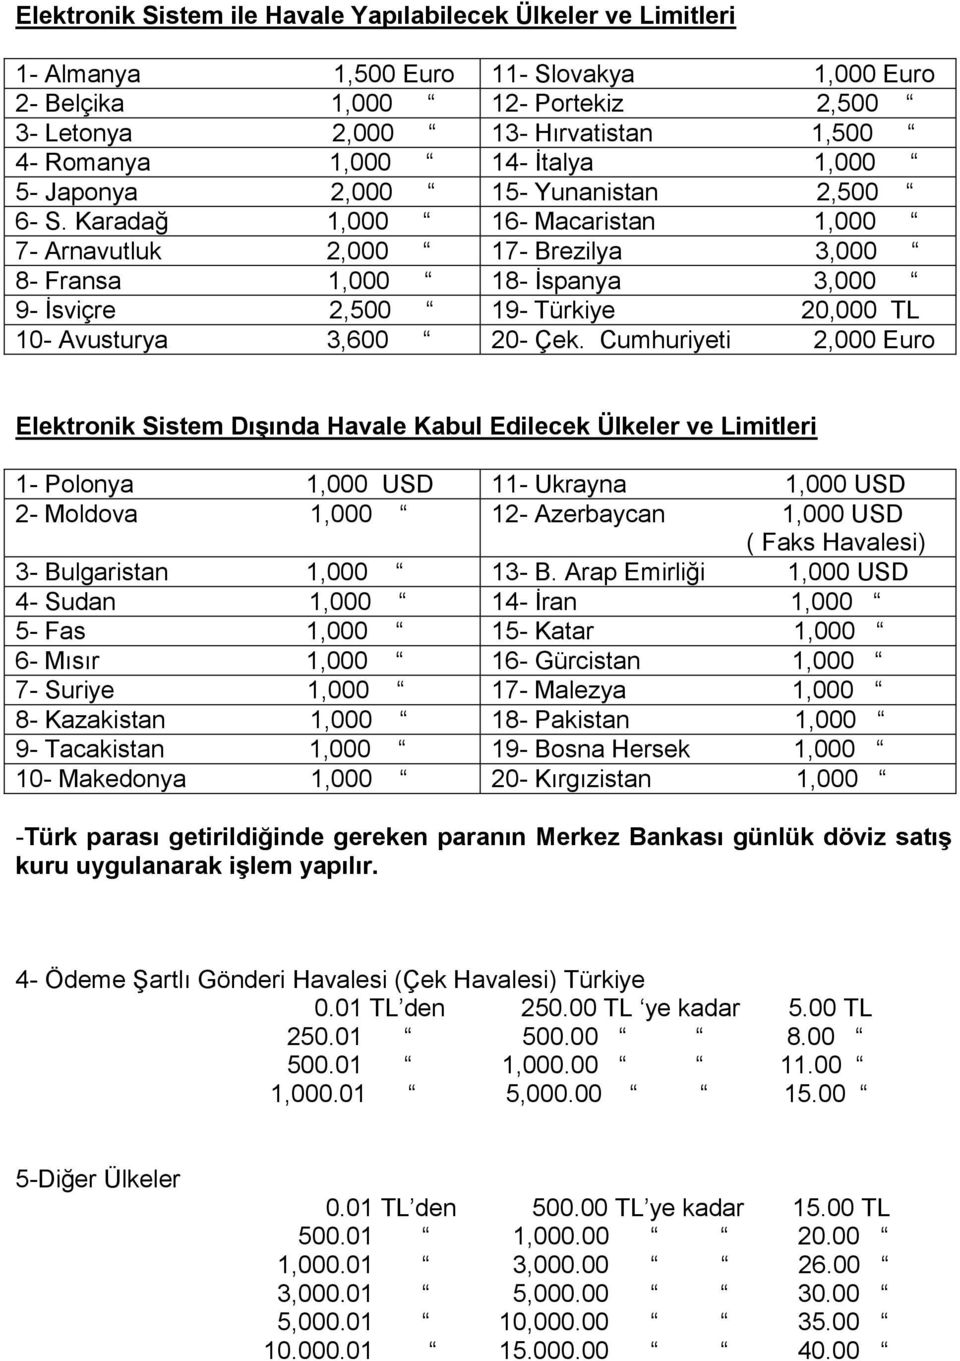 Karadağ 1,000 16- Macaristan 1,000 7- Arnavutluk 2,000 17- Brezilya 3,000 8- Fransa 1,000 18- İspanya 3,000 9- İsviçre 2,500 19- Türkiye 20,000 TL 10- Avusturya 3,600 20- Çek.